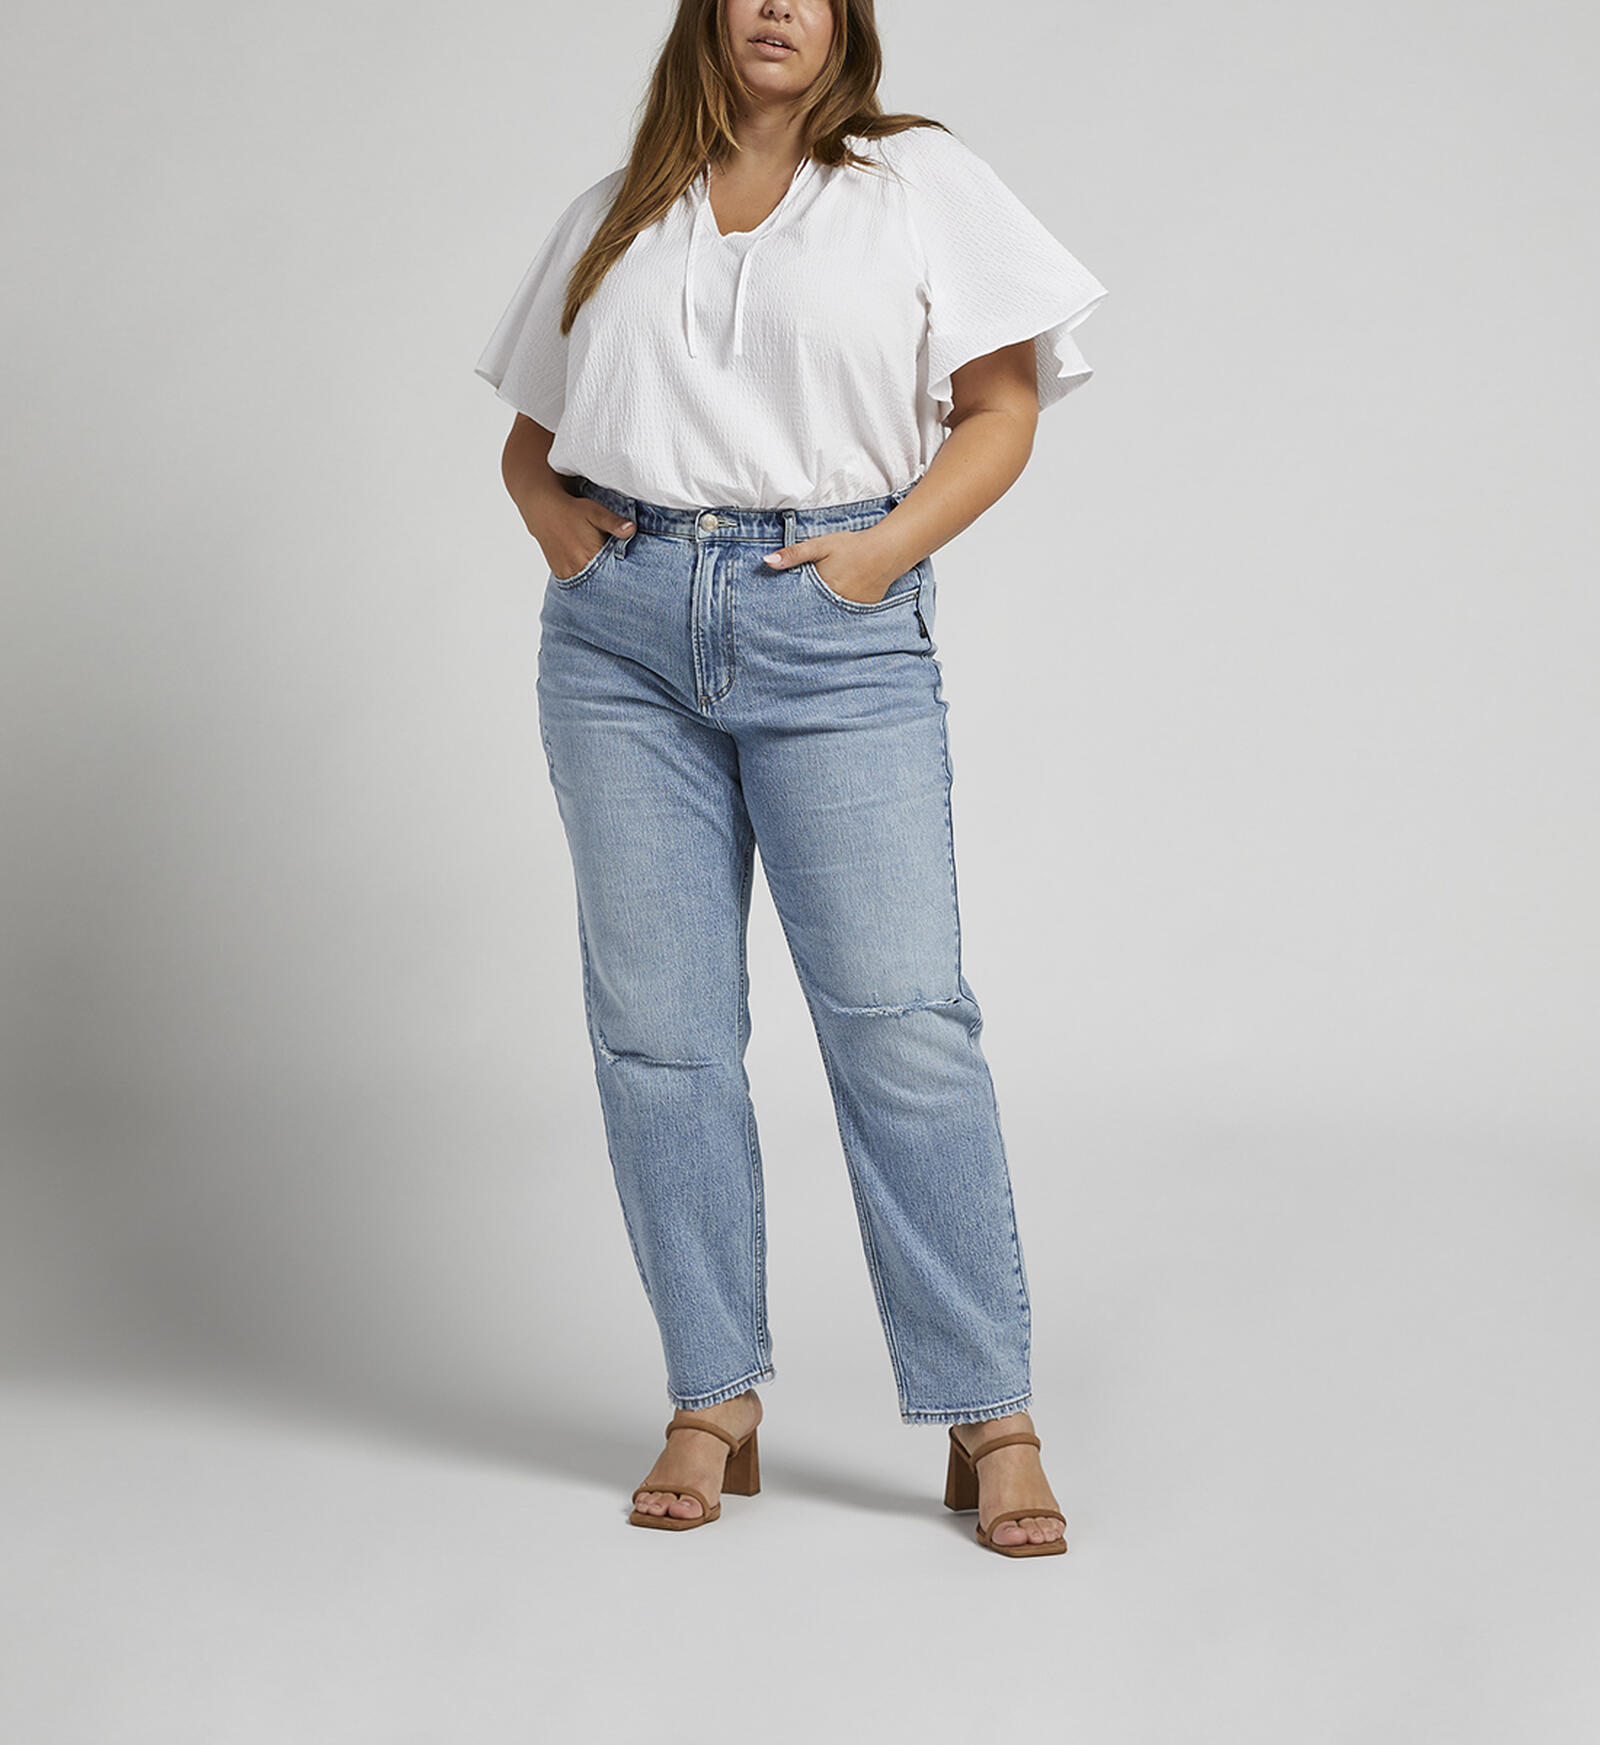 Best Plus-Size Jeans 2018